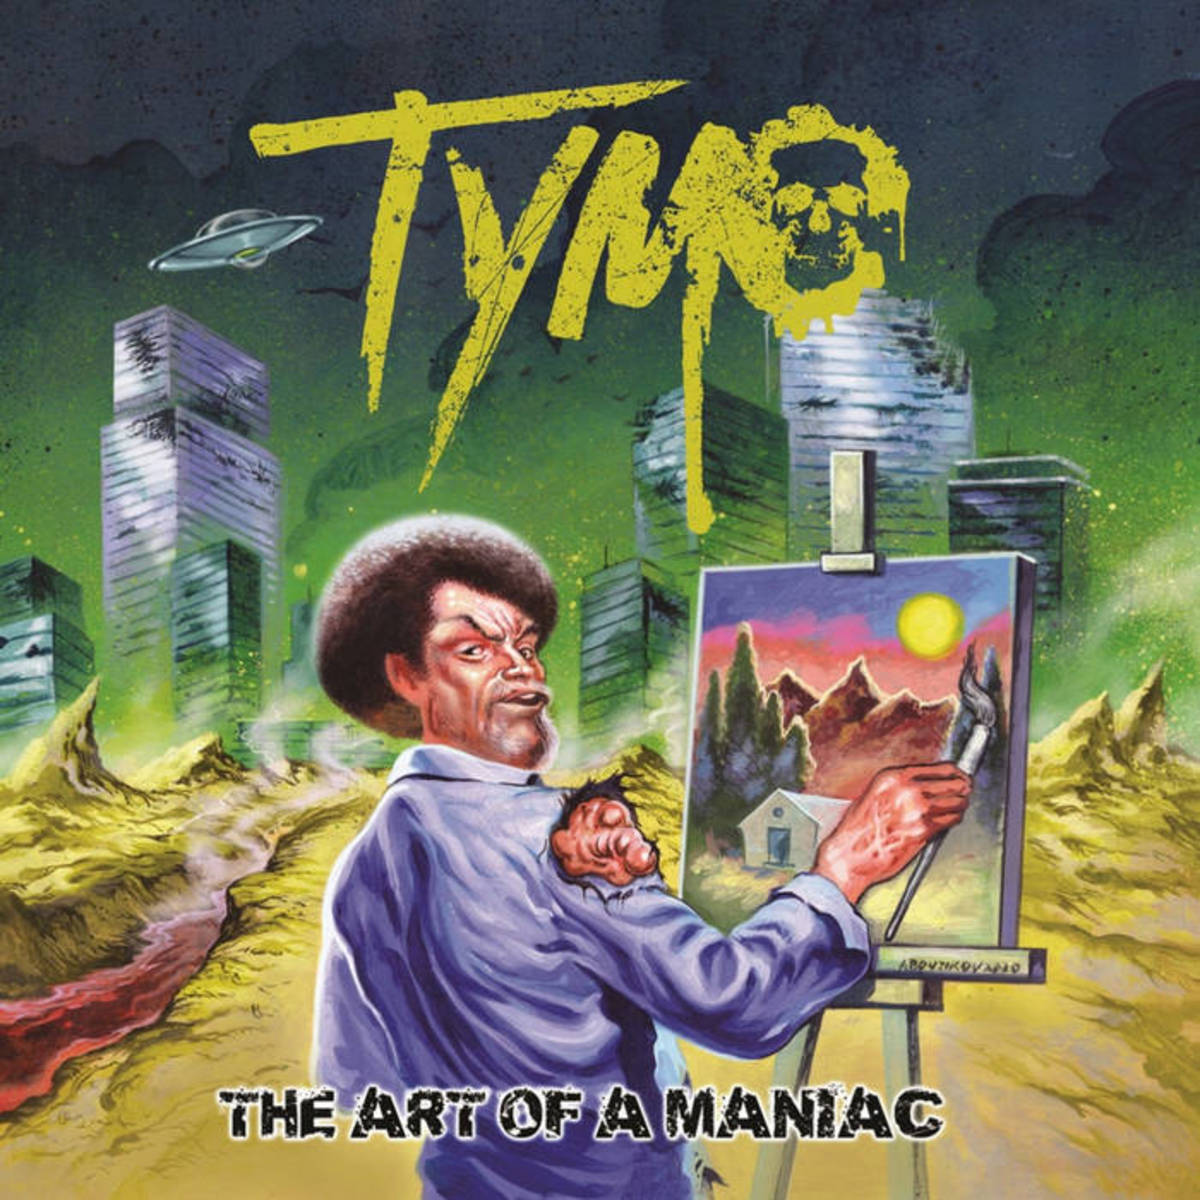 tymo-the-art-of-a-maniac-album-review